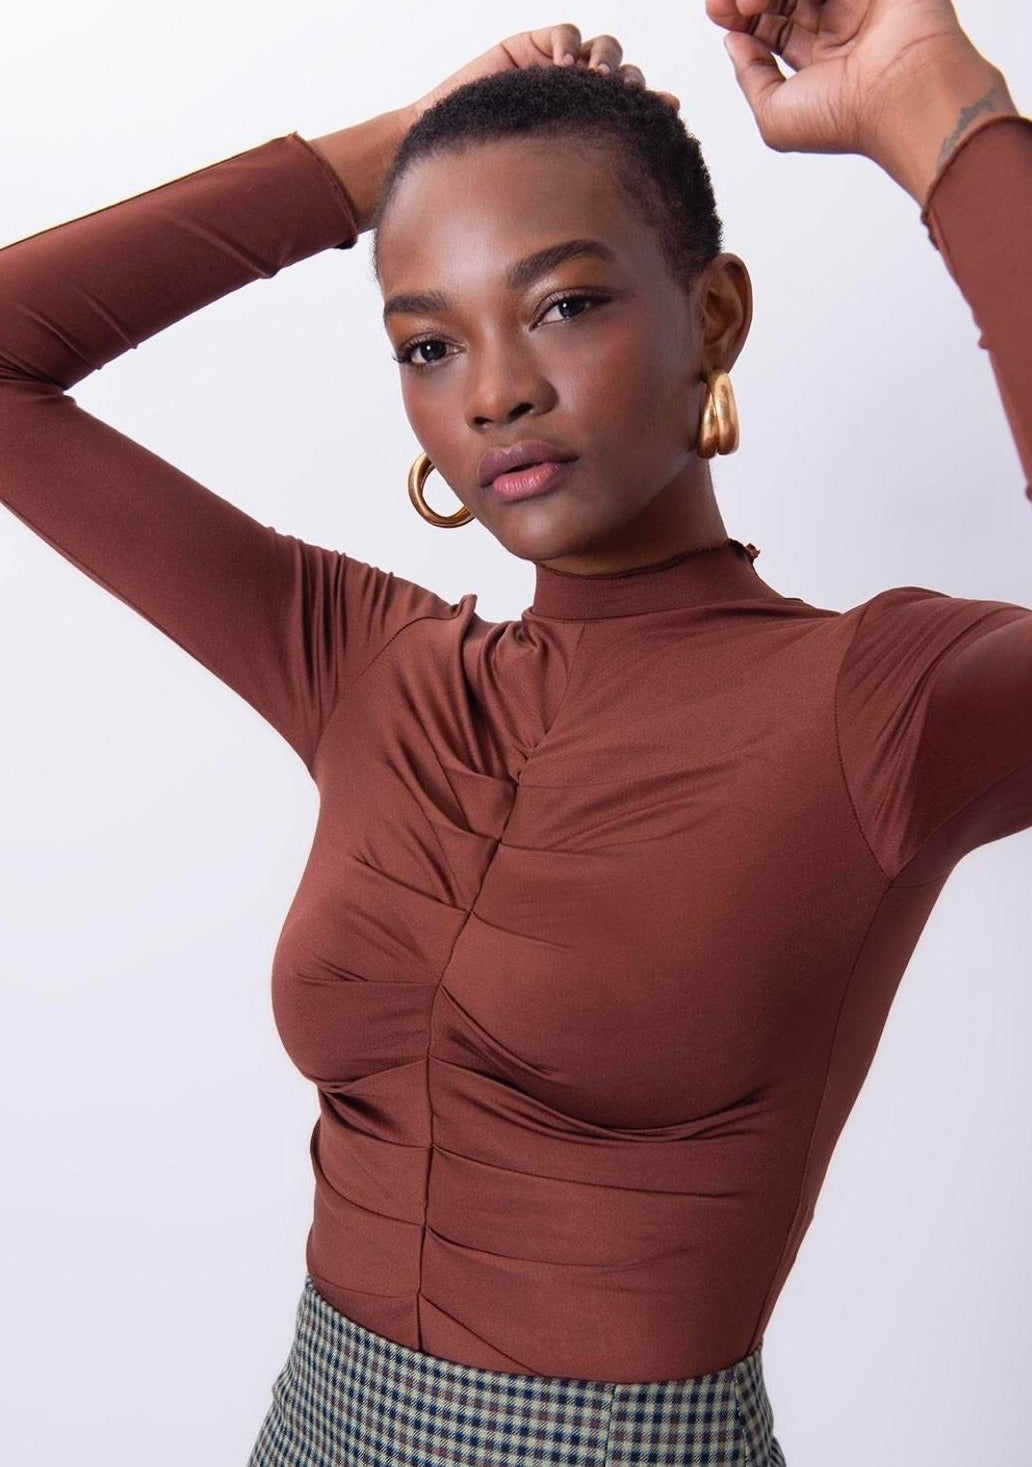 Дамска блуза NERVIDA  https://bvseductive.com/products/дамска-блуза-nervida  5 % еластан 95 % пoлиестер впечатляваща дамска блуза в кафяв цвят моделът е с къса секси дължина и набор отпред изключително красива визия с блуза&nbsp;NERVIDA